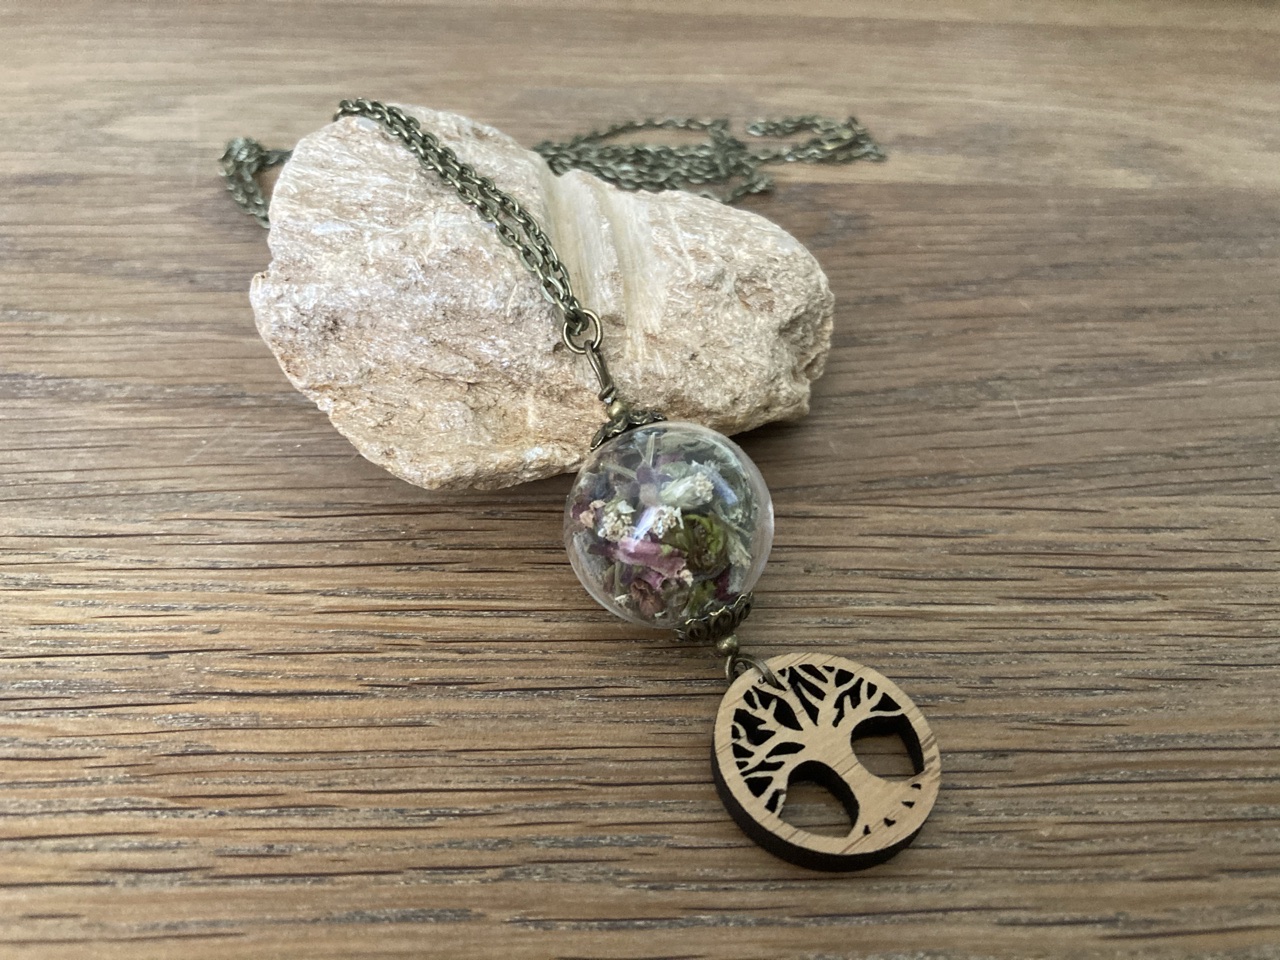 Halskette mit Glaskugel (Schafgarbe, Lavendel, Schneeball) und Holzanhänger